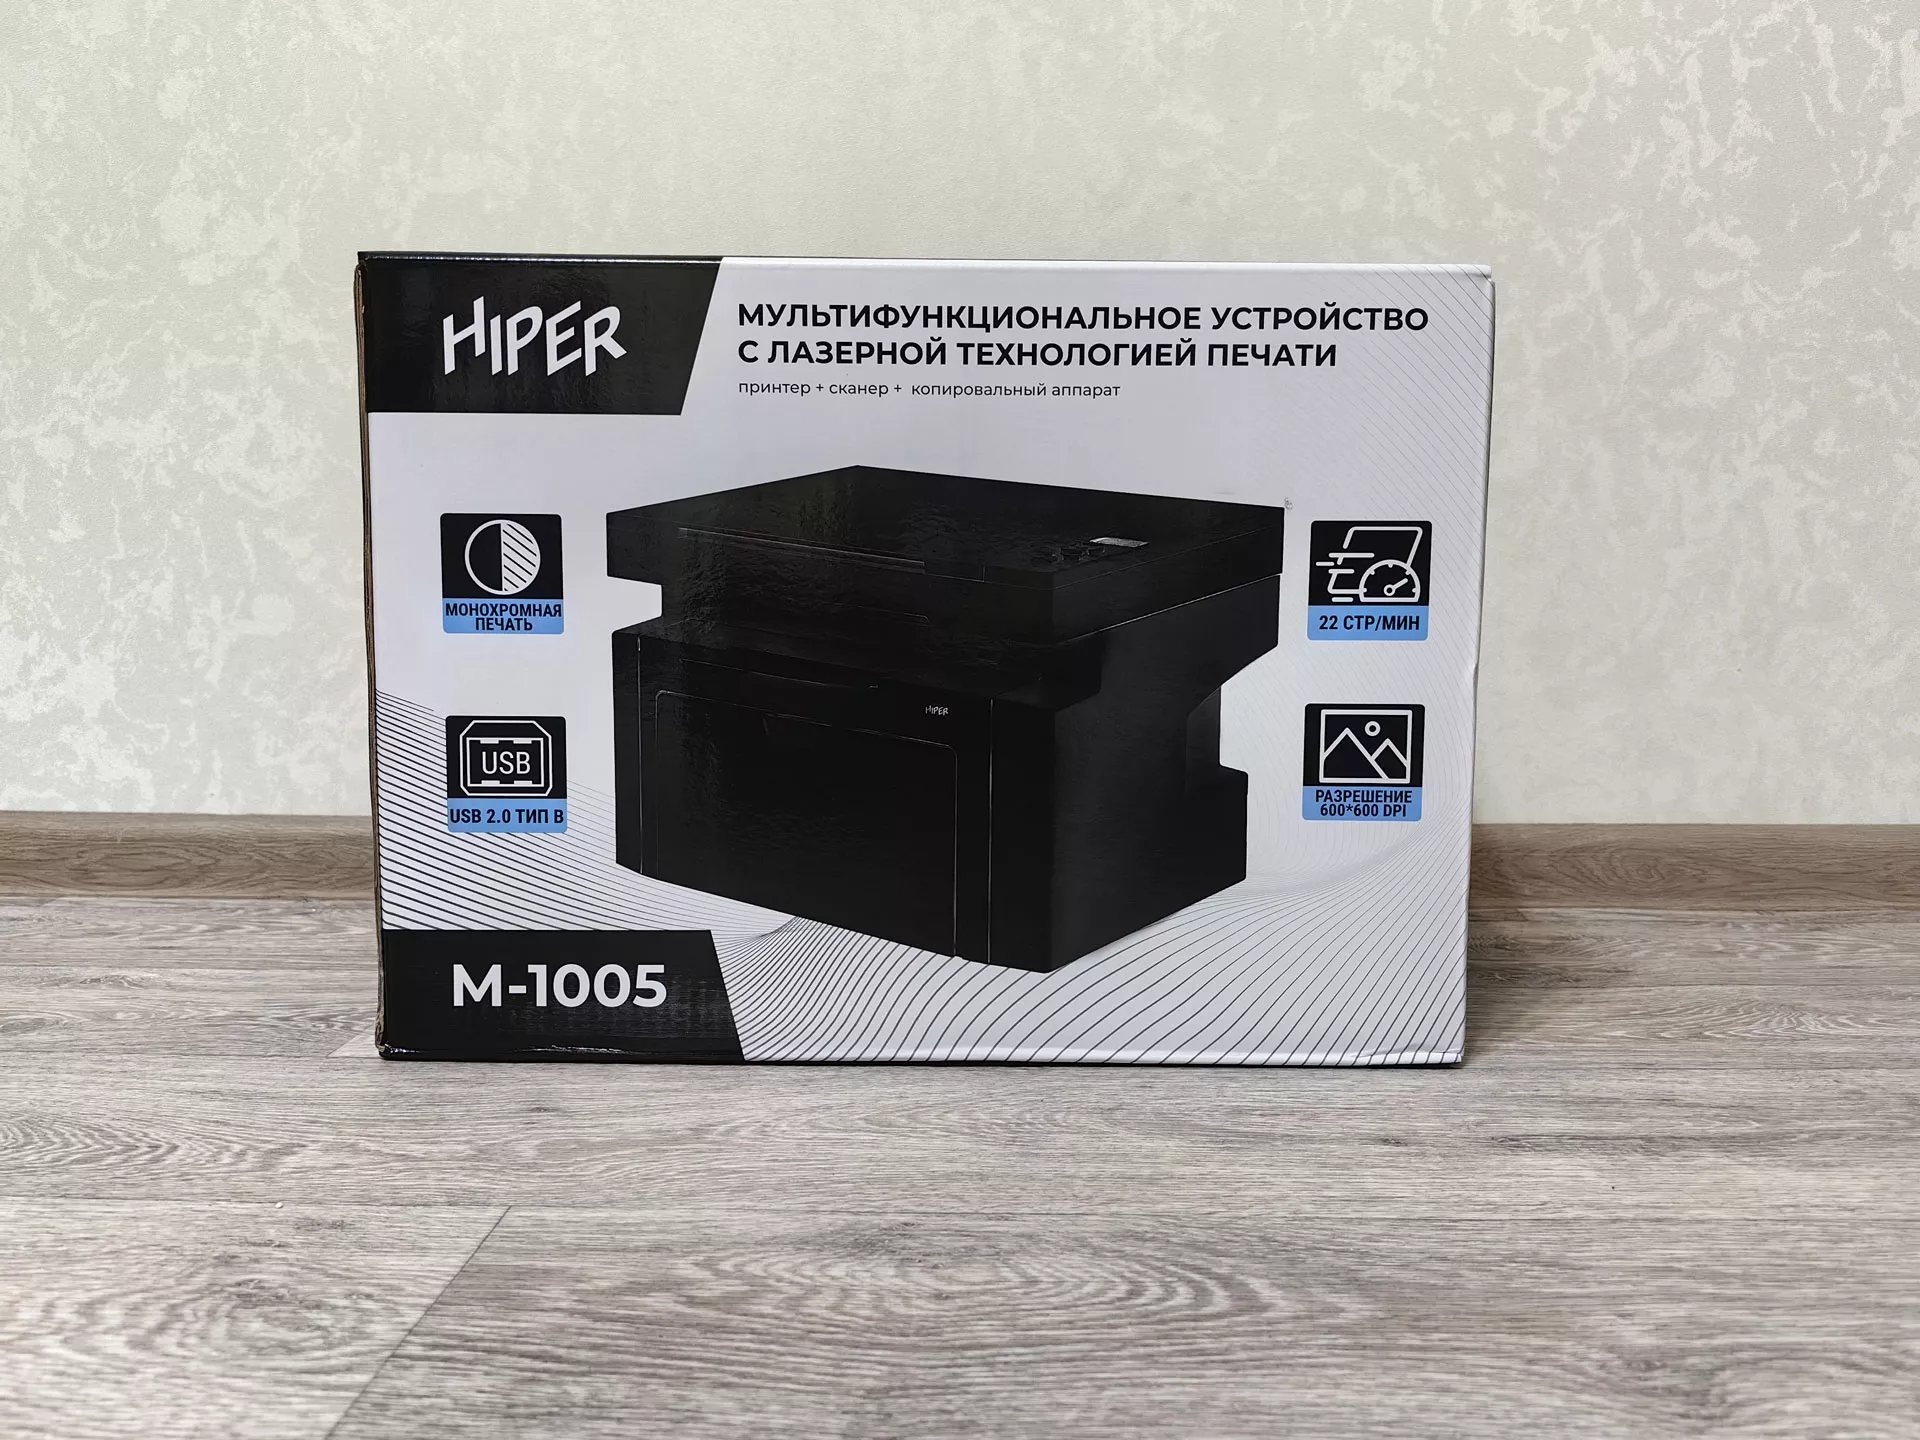 Обзор МФУ HIPER M-1005 Black c лазерной технологией печати